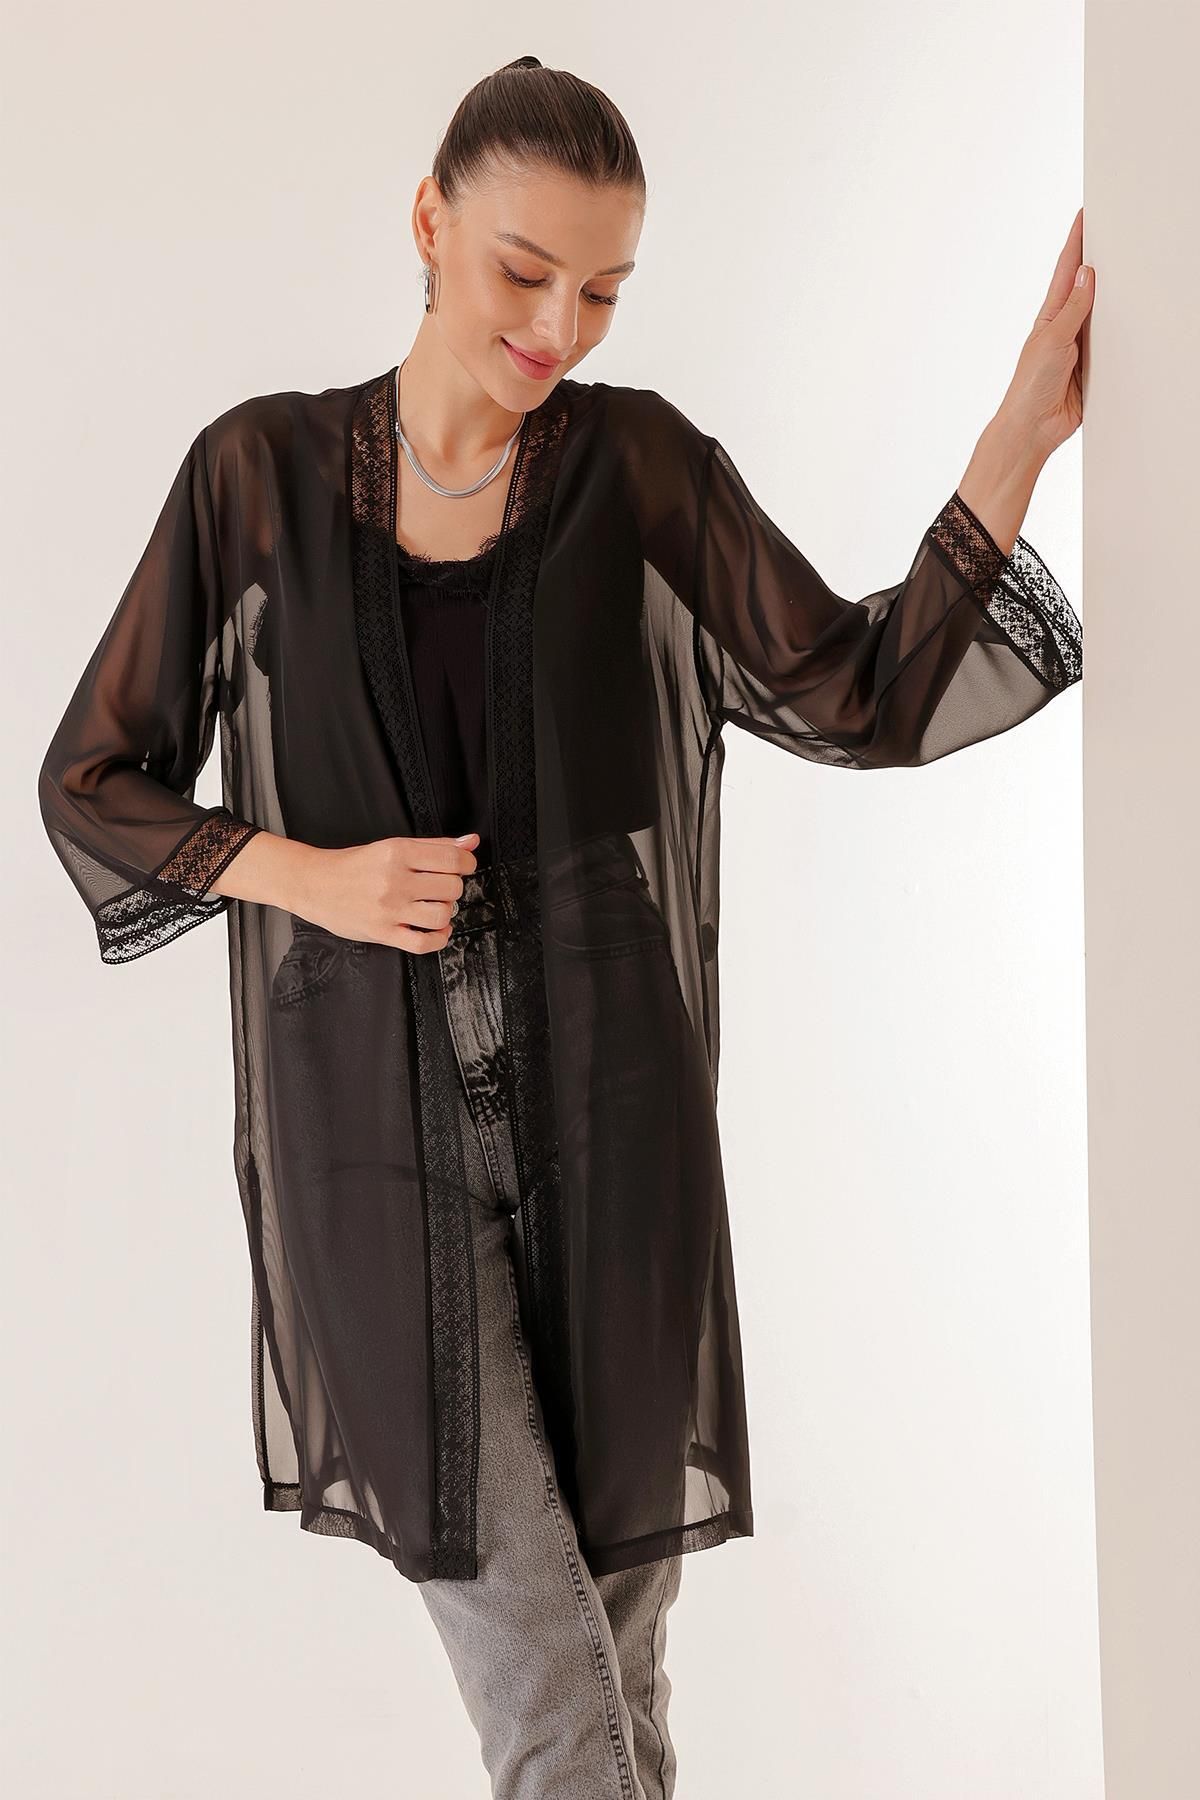 By Saygı Yaka Ve Kol Ucu Dantelli Uzun Şifon Kimono Ceket